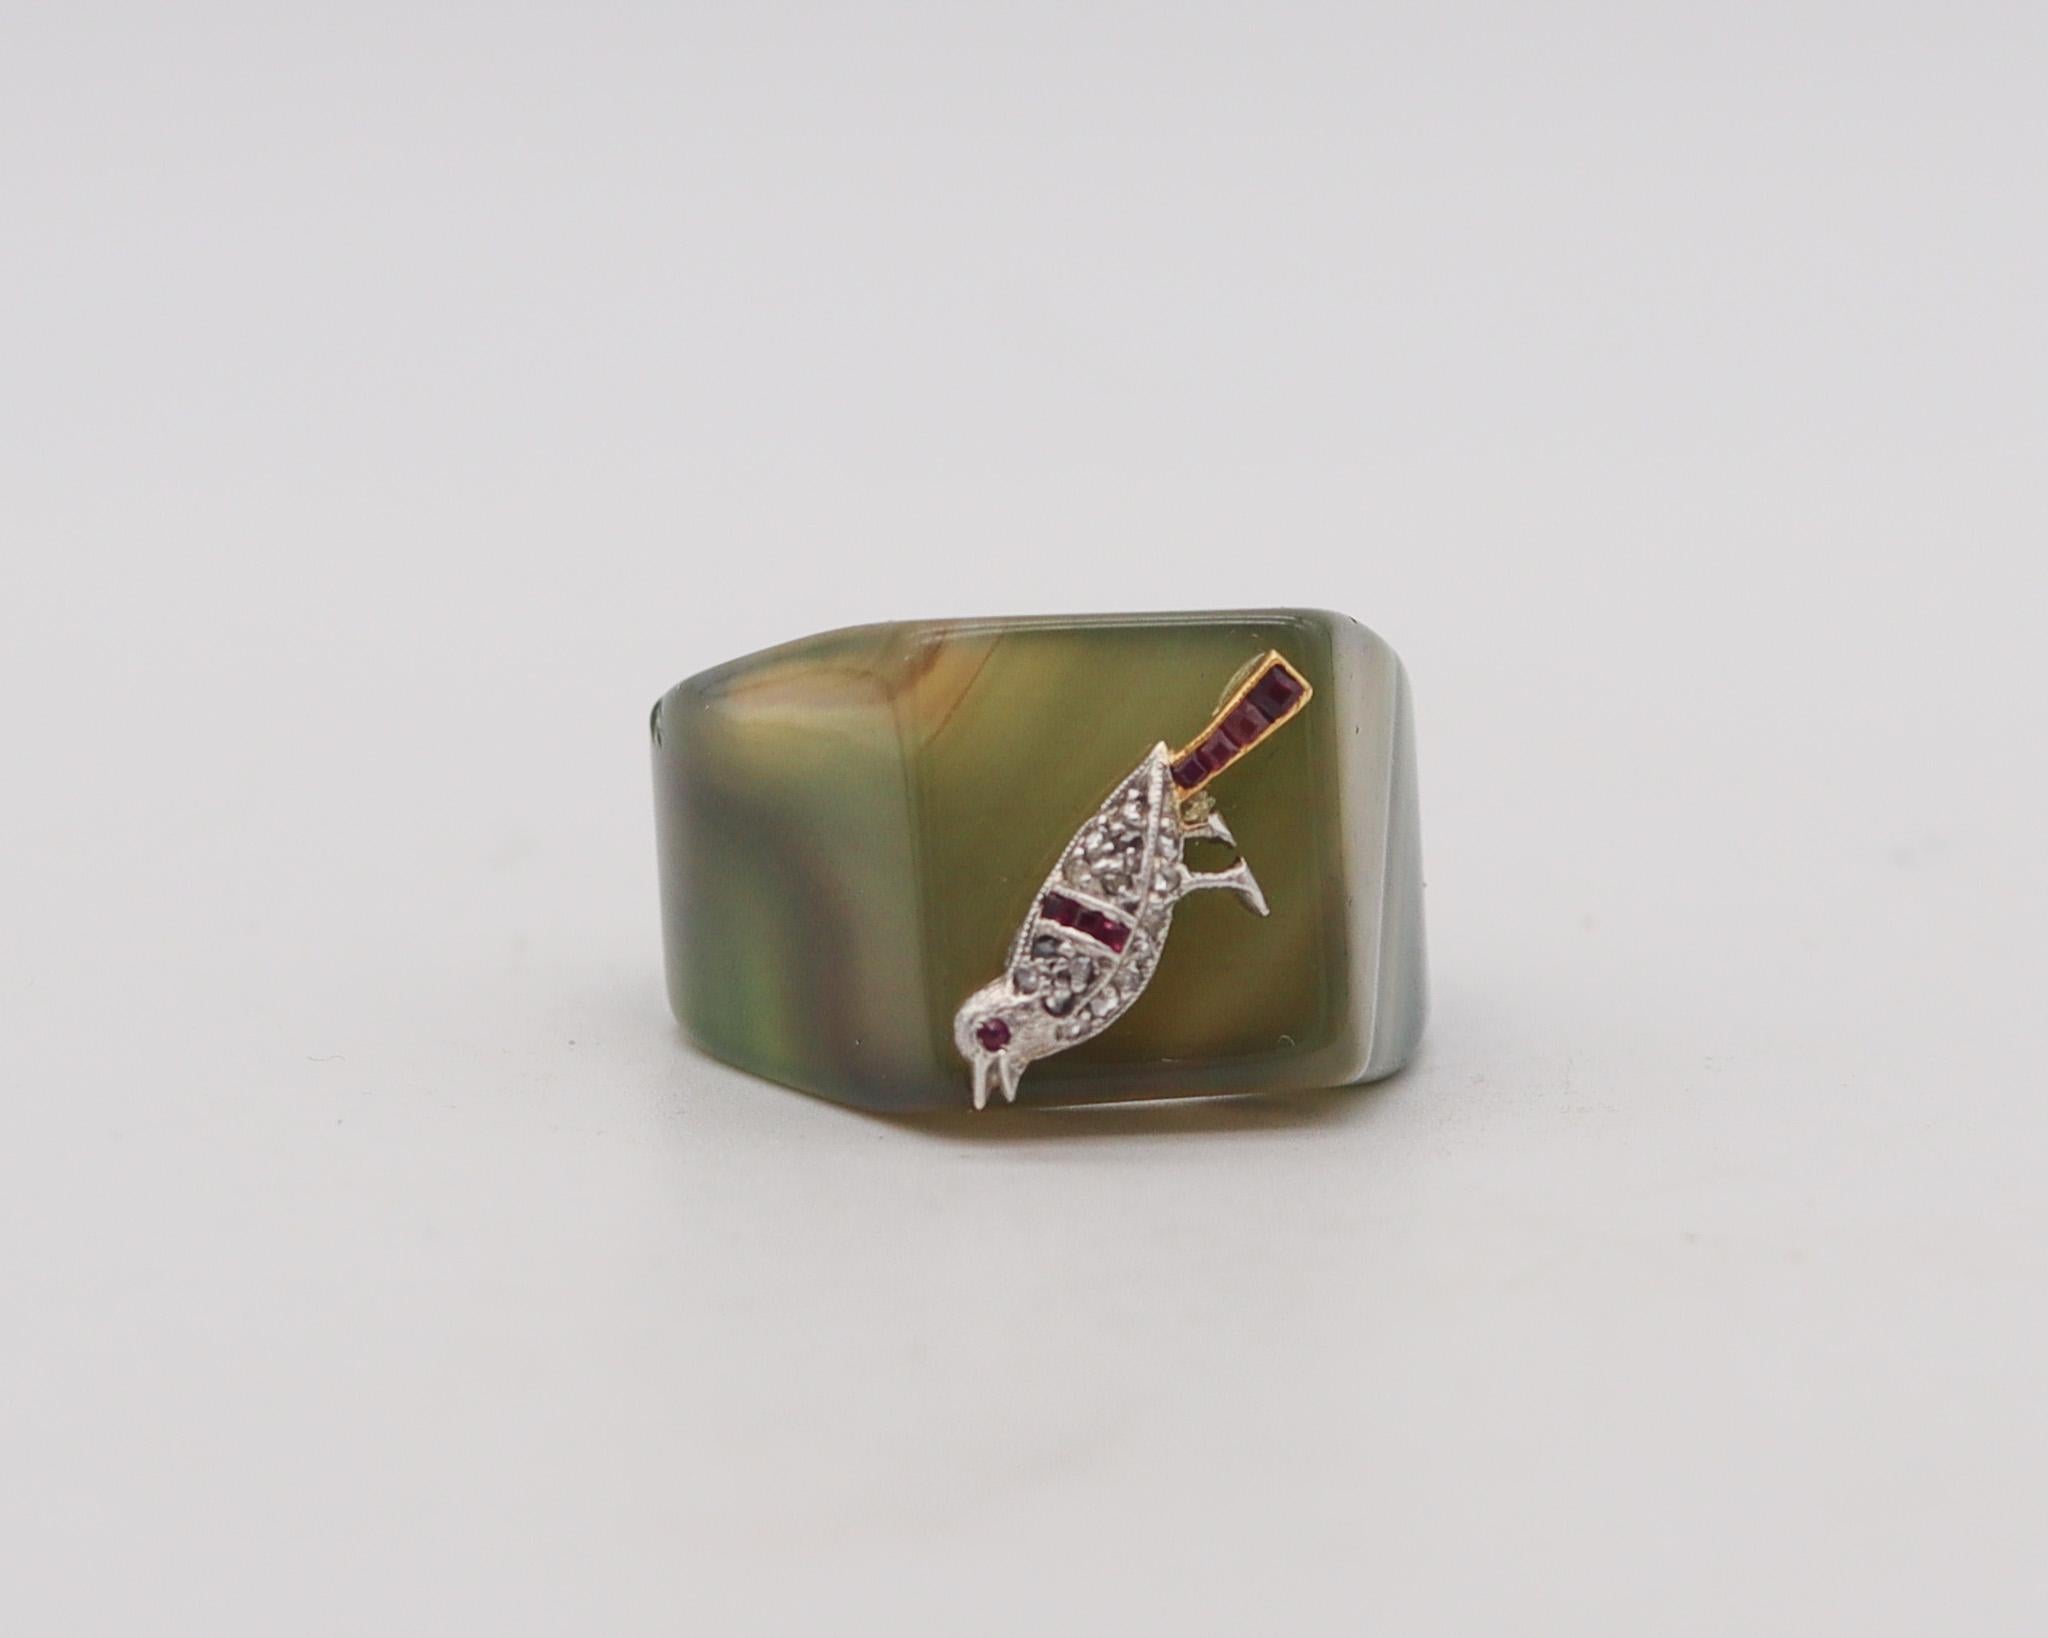 Ein Art-Deco-Ring aus geschnitztem Achat mit einer stilisierten Taube.

Sehr schöner und ungewöhnlicher Cocktailring aus der Zeit des Art déco von 1925. Dieser Ring besteht aus einem geschnitzten Stück grünlichen Achats und einer Taube aus massivem